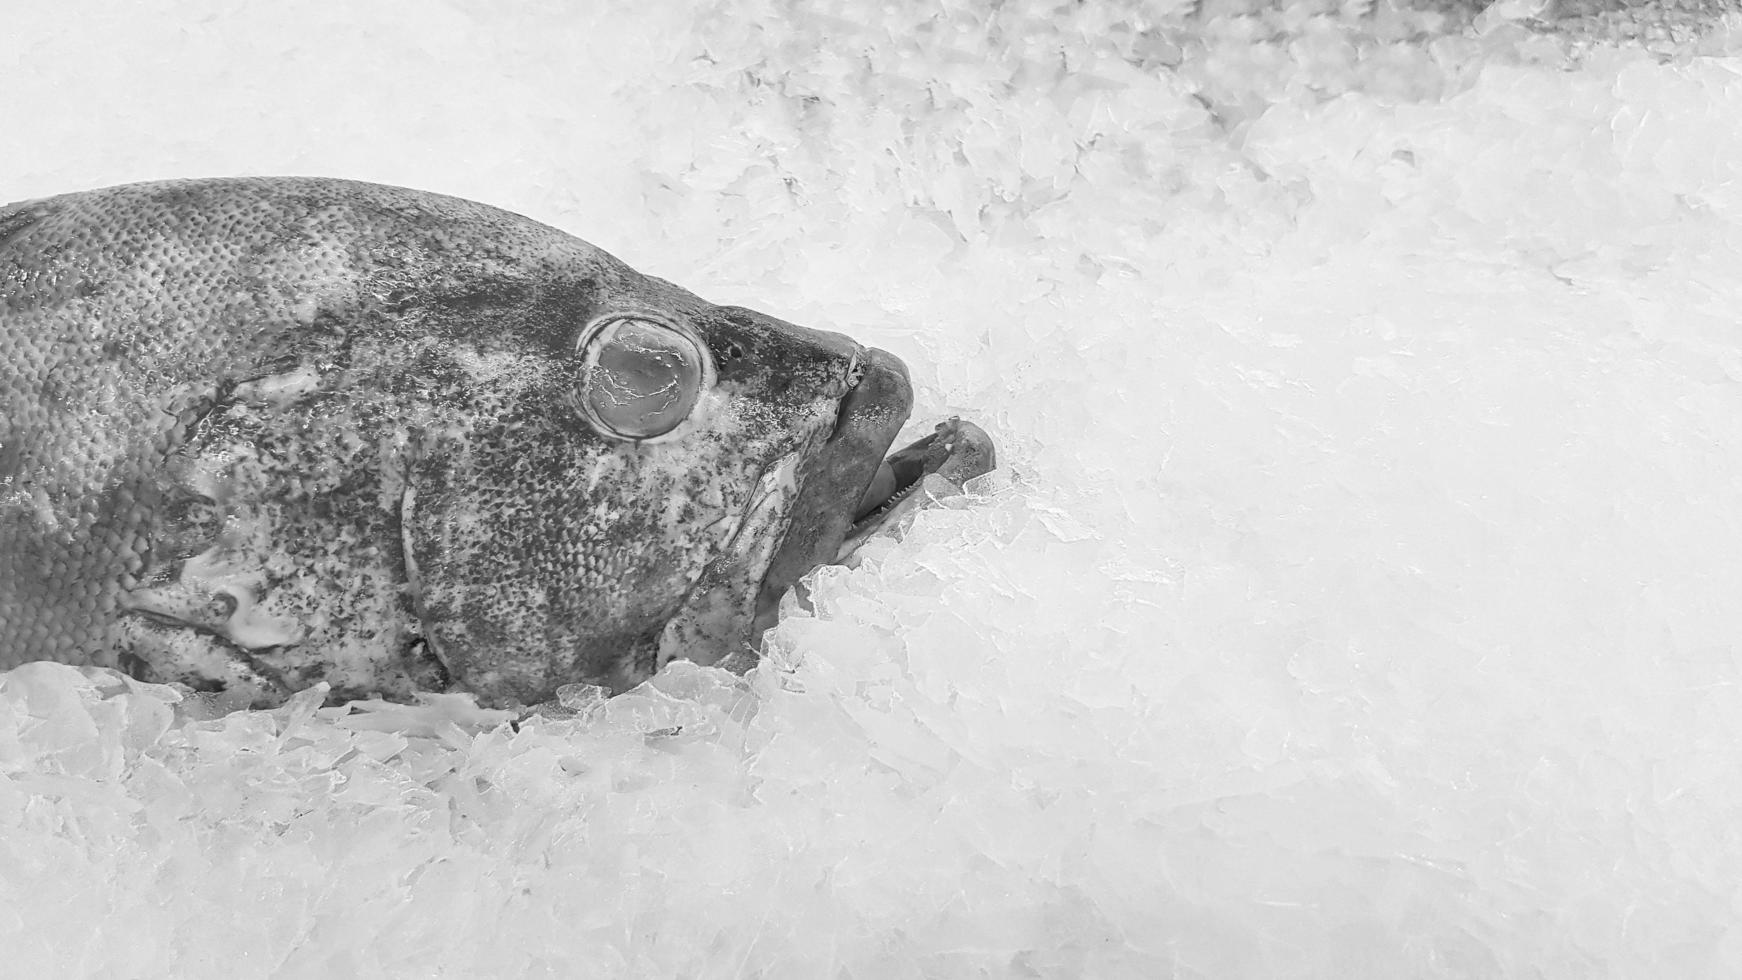 gel de mérou frais sur glace à vendre au marché aux poissons ou au supermarché avec espace de copie en noir et blanc ou monochrome. aliments non cuits et animaux sur sous-marin. photos d'art